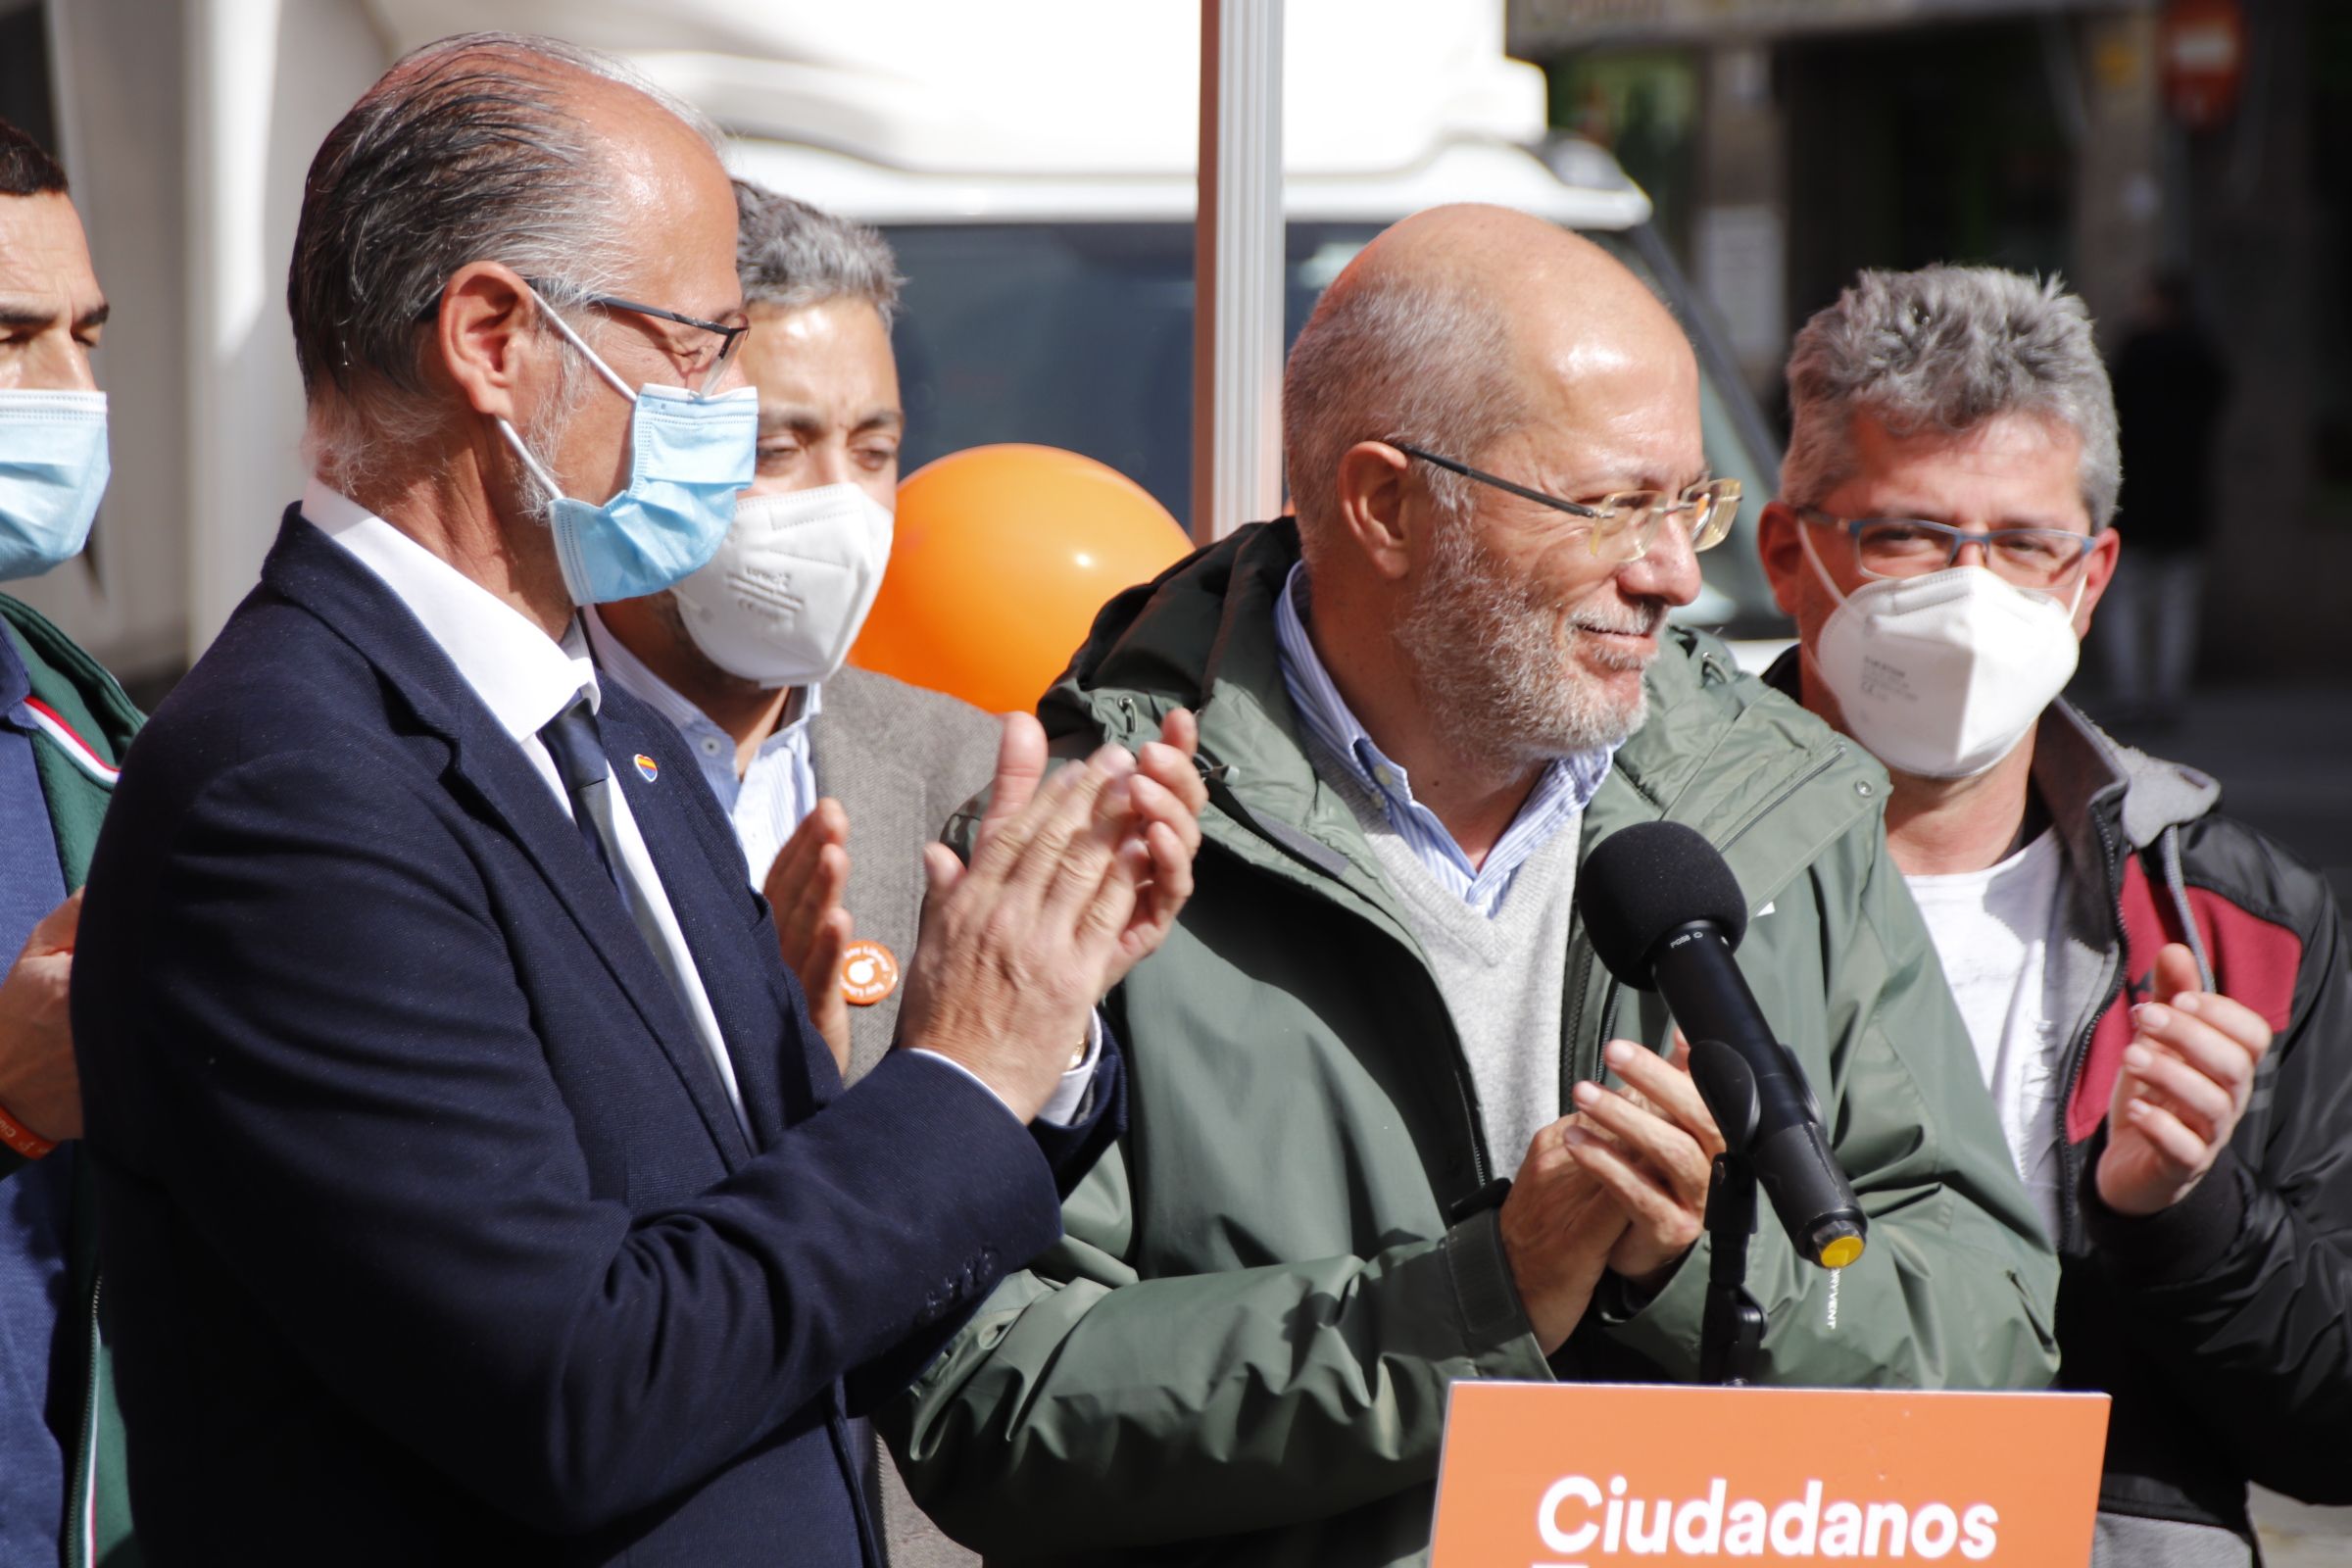 Francisco Igea y Luis Fuentes, atienden a los medios de comunicación en la carpa de Ciudadanos 